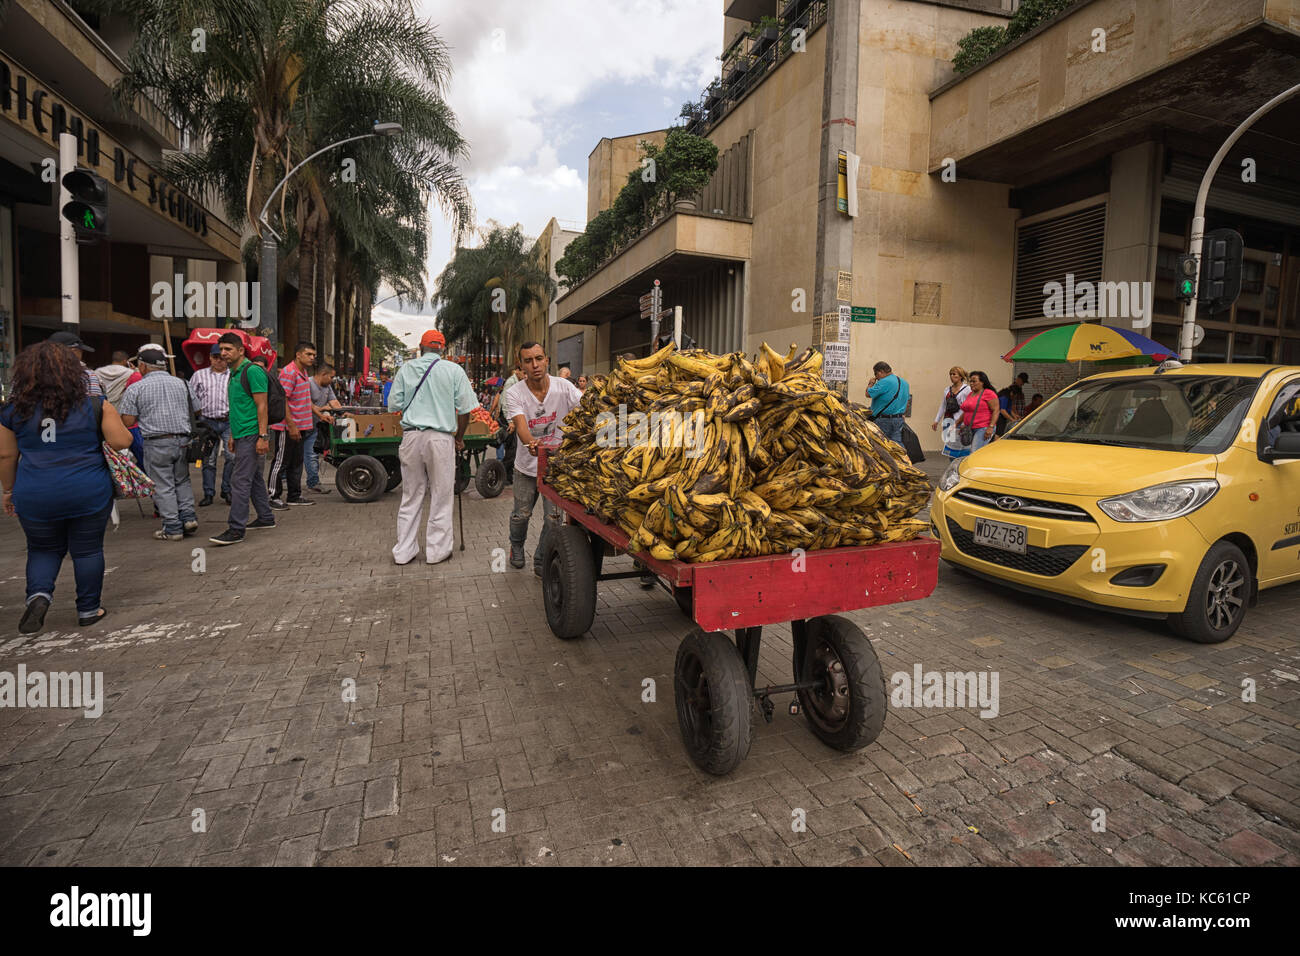 Septiembre 26, 2017 en Medellín, Colombia: un proveedor móvil empujando un carrito lleno de plátanos en el centro de la ciudad Foto de stock